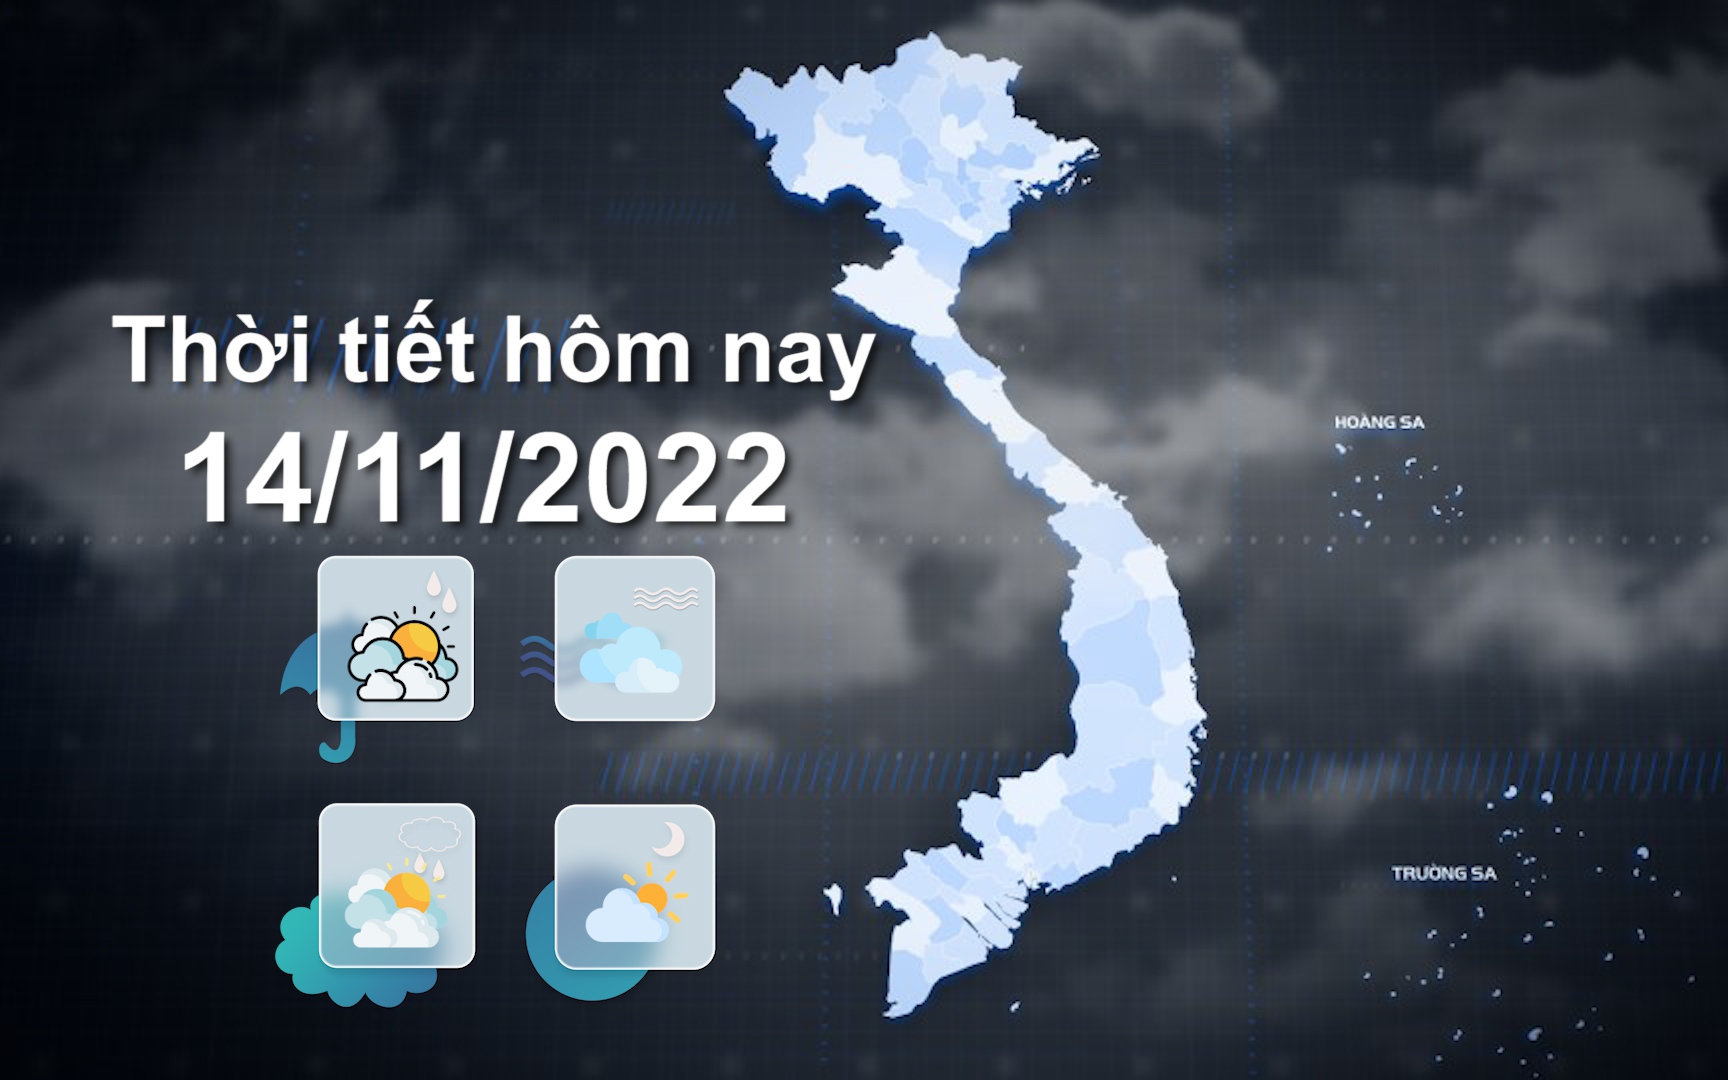 Thời tiết hôm nay 14/11/2022: Bắc Bộ sáng sớm trời lạnh, có mưa nhỏ vài nơi